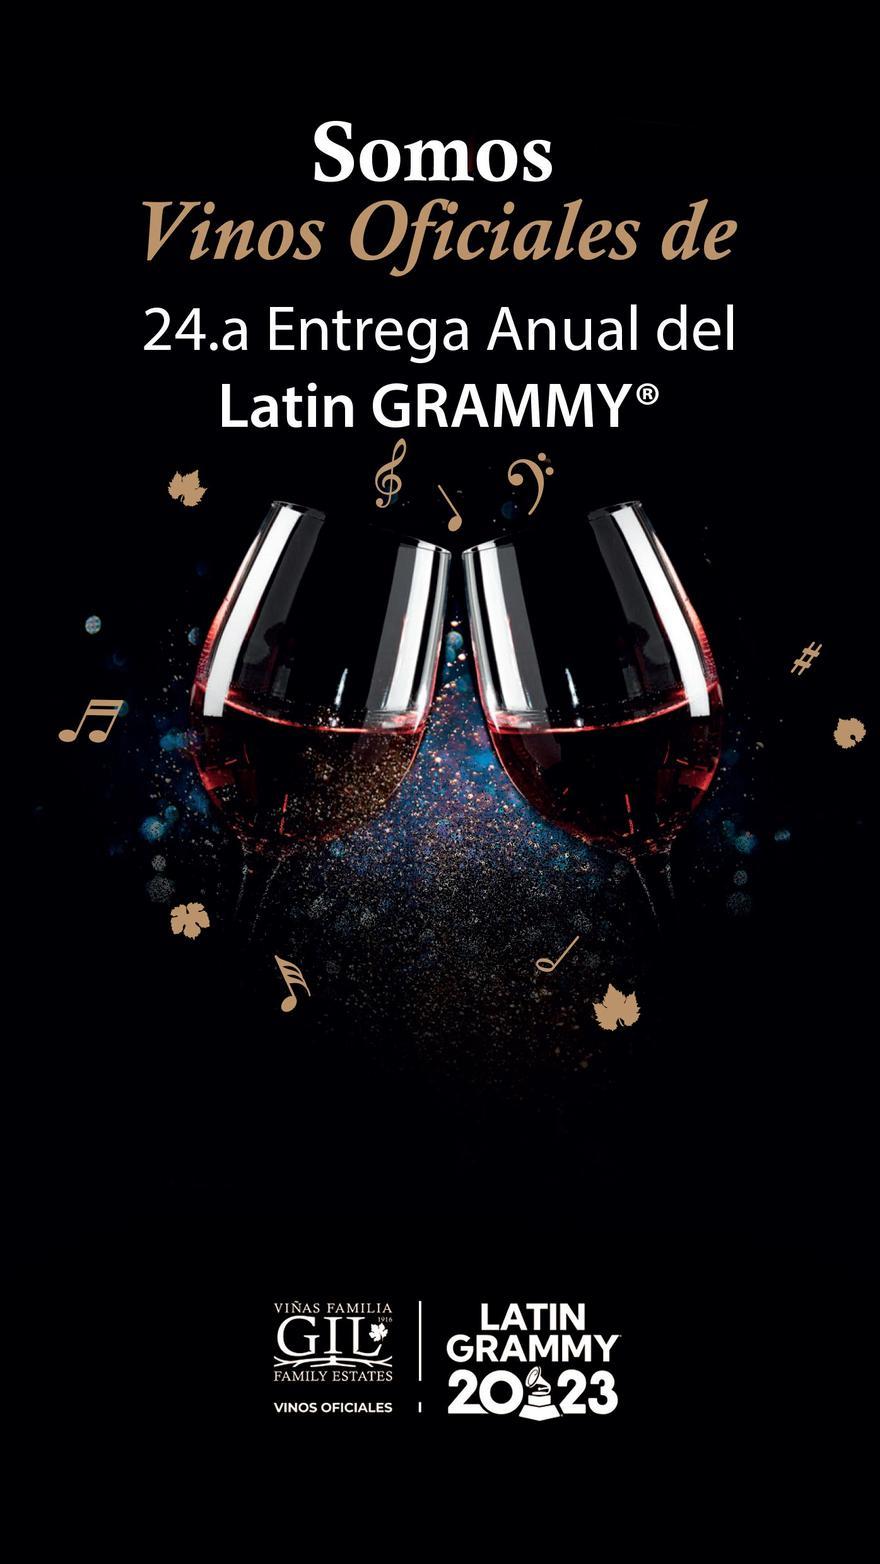 La bodega murciana ha sido seleccionada para deleitar a los asistentes de los Latin Grammy 2023.